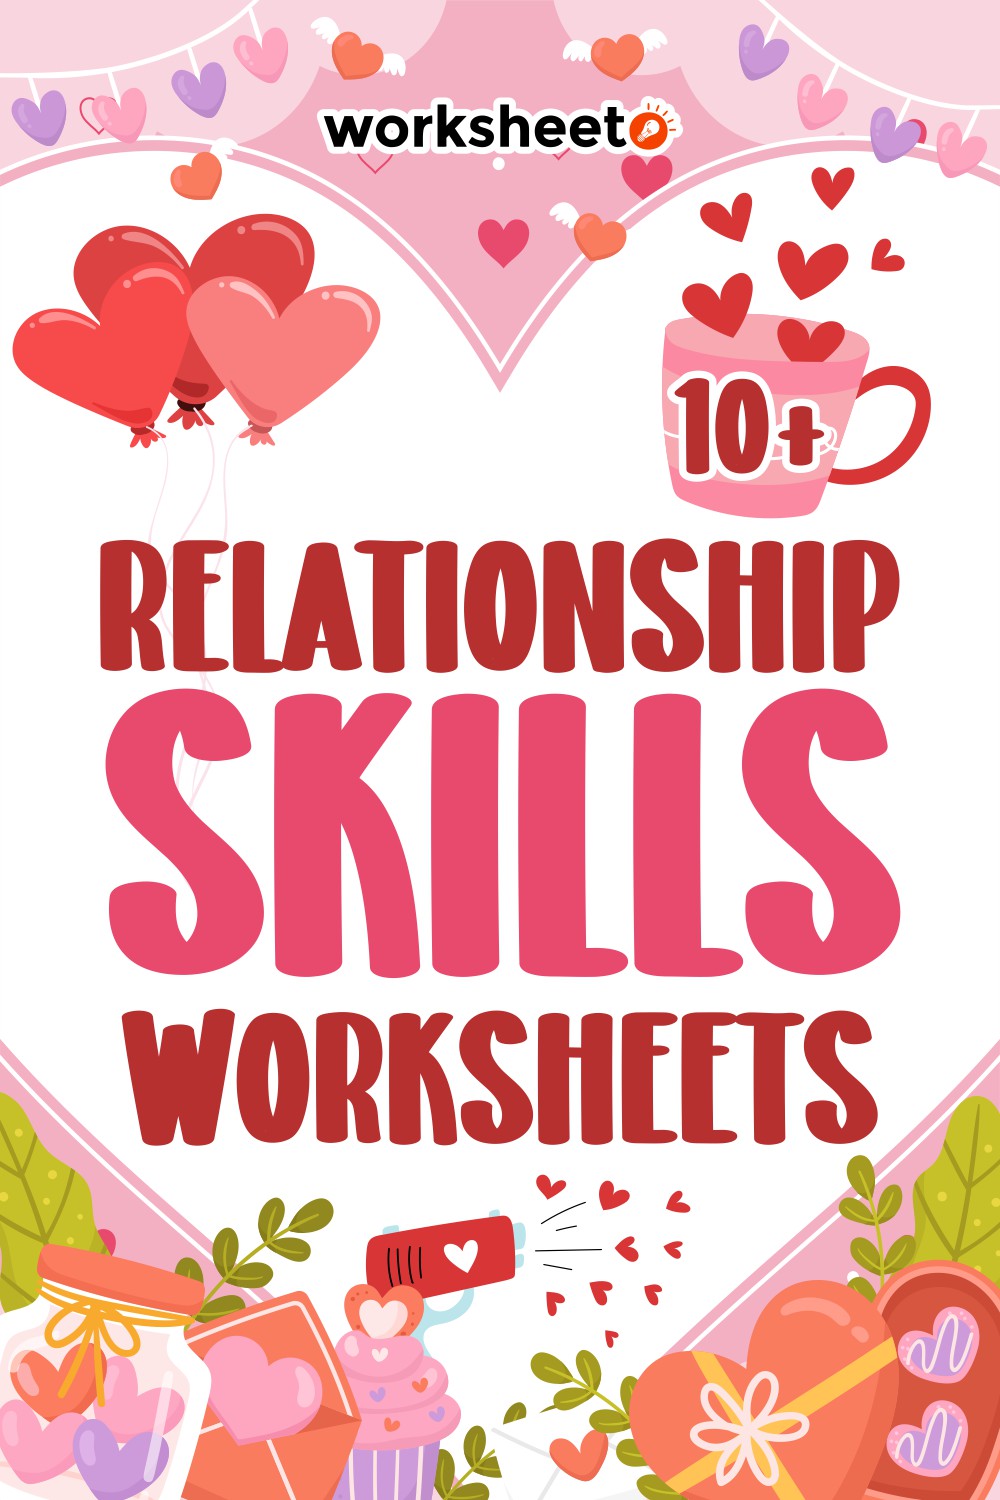 Relationship Skills Worksheets